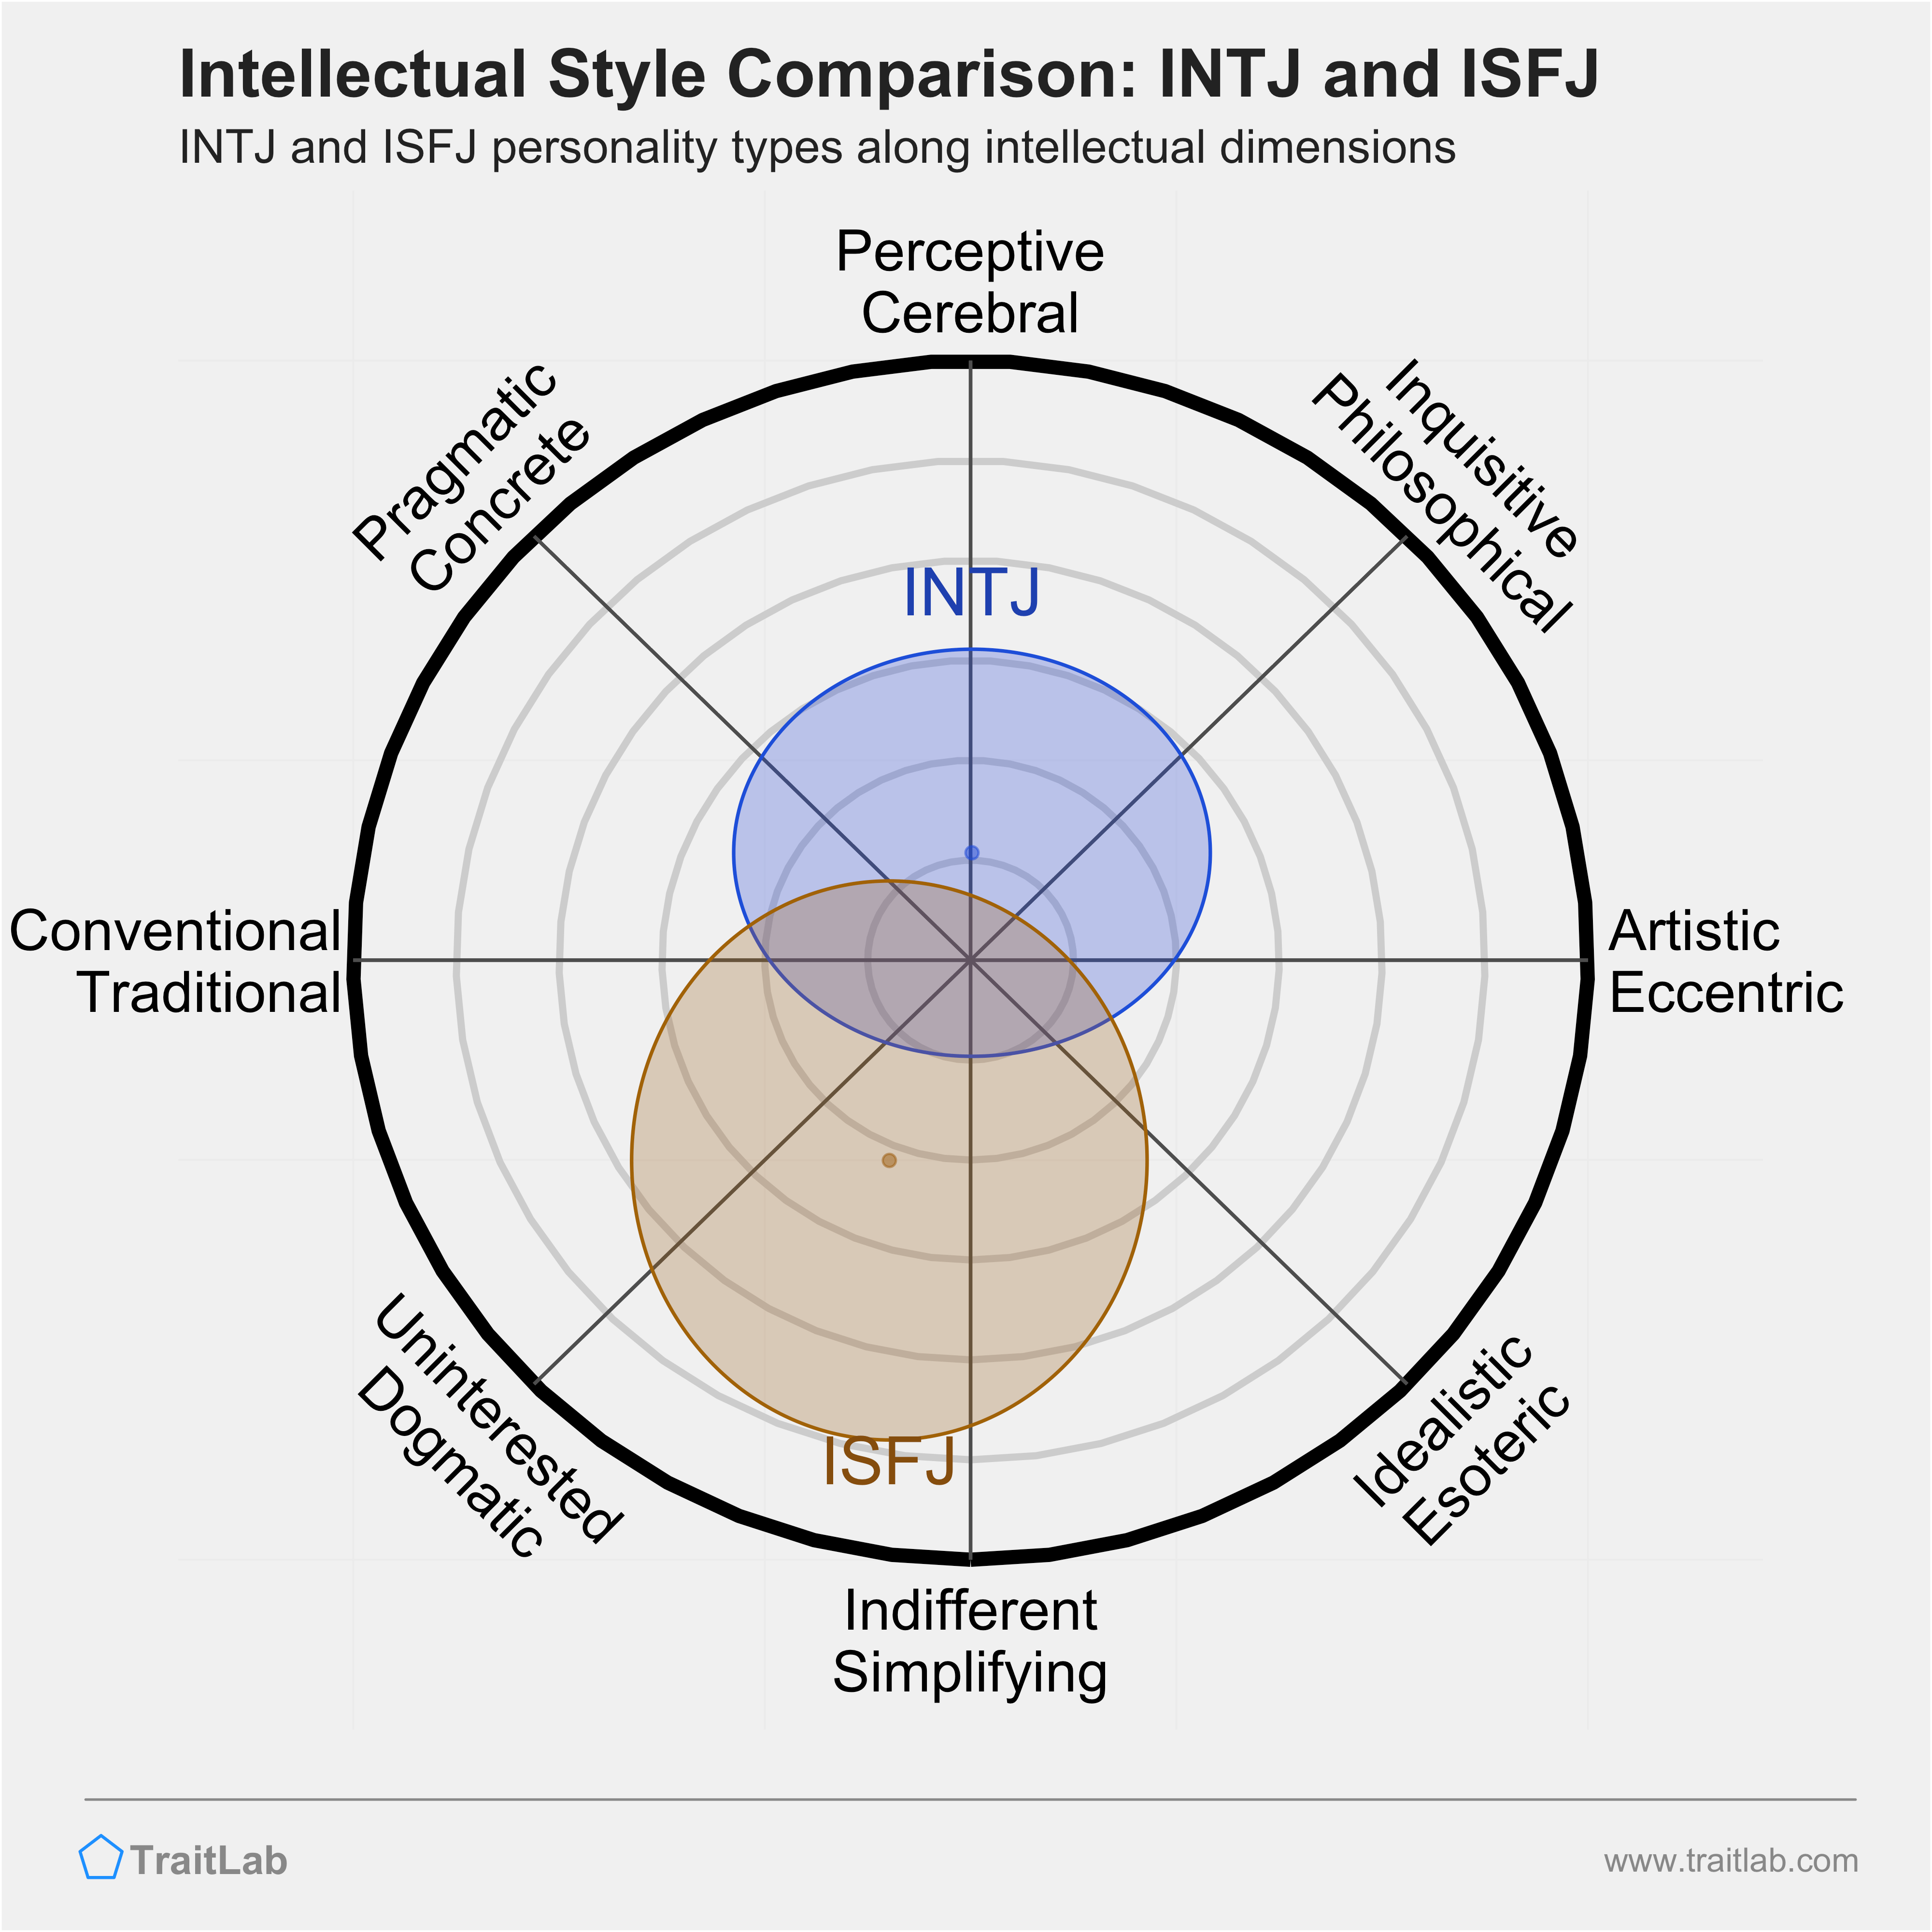 INTJ and ISFJ comparison across intellectual dimensions